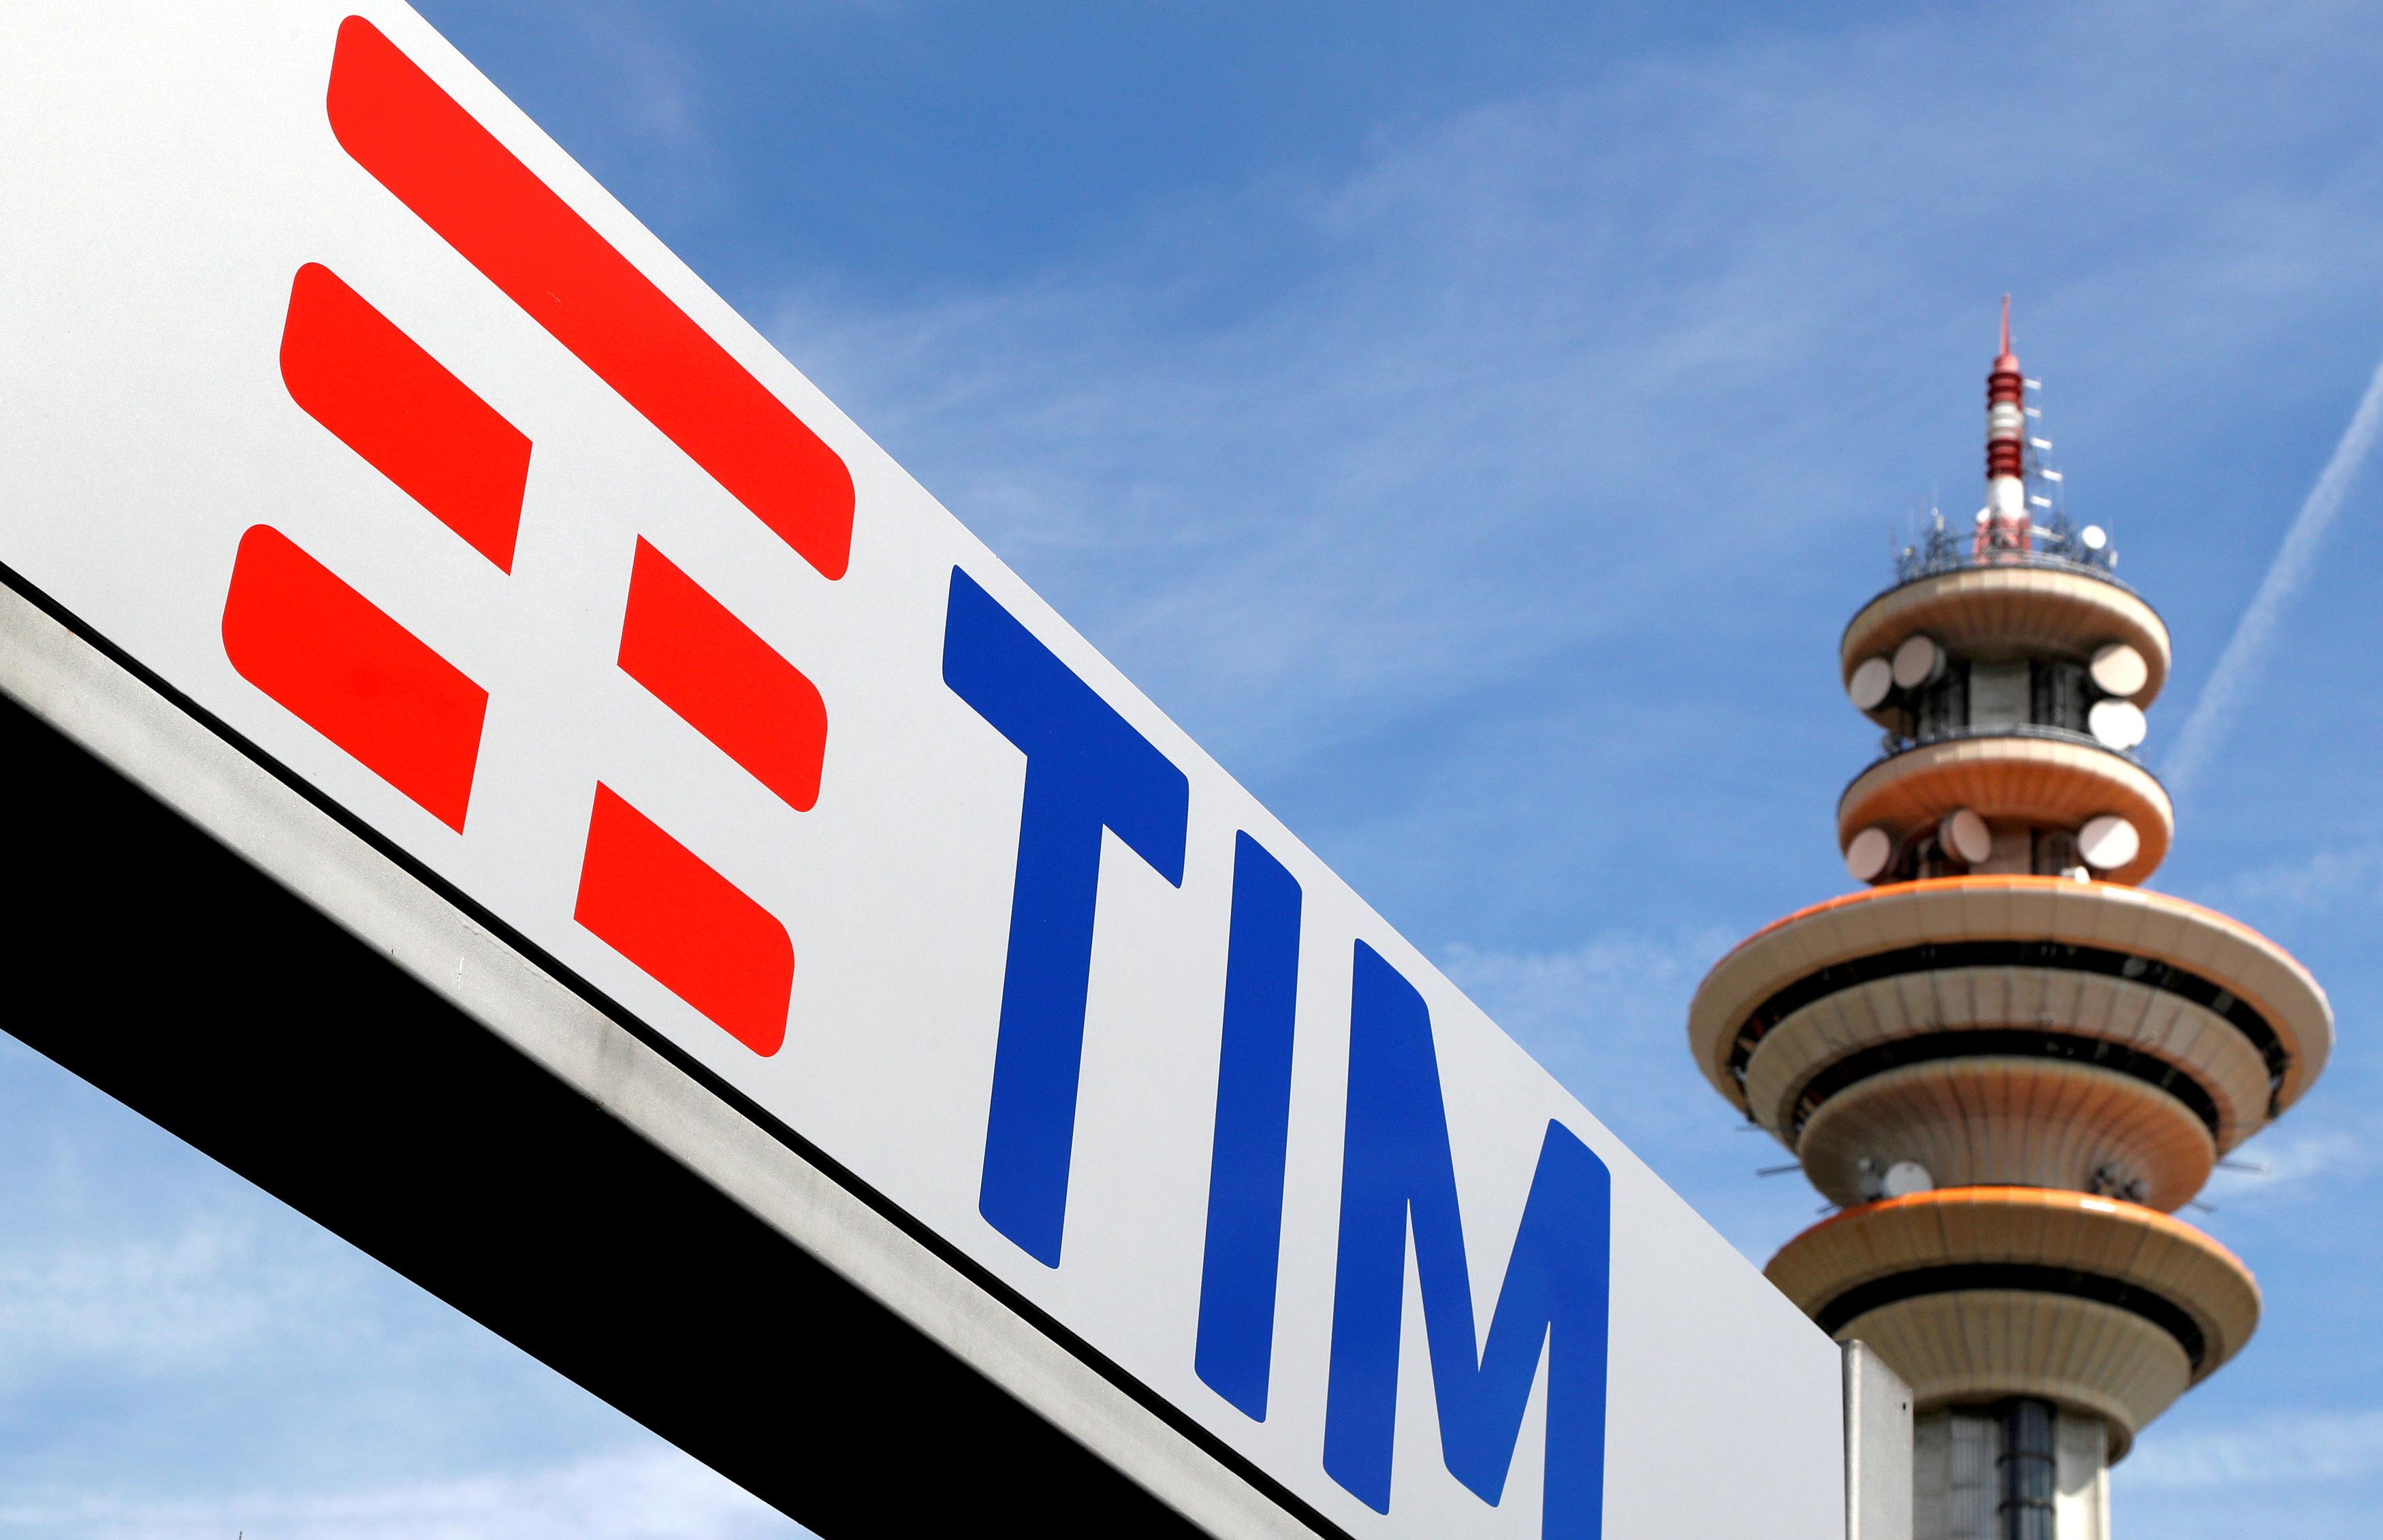 Sous la pression de Bolloré, Telecom Italia va-t-il céder des actifs et perdre son patron ?